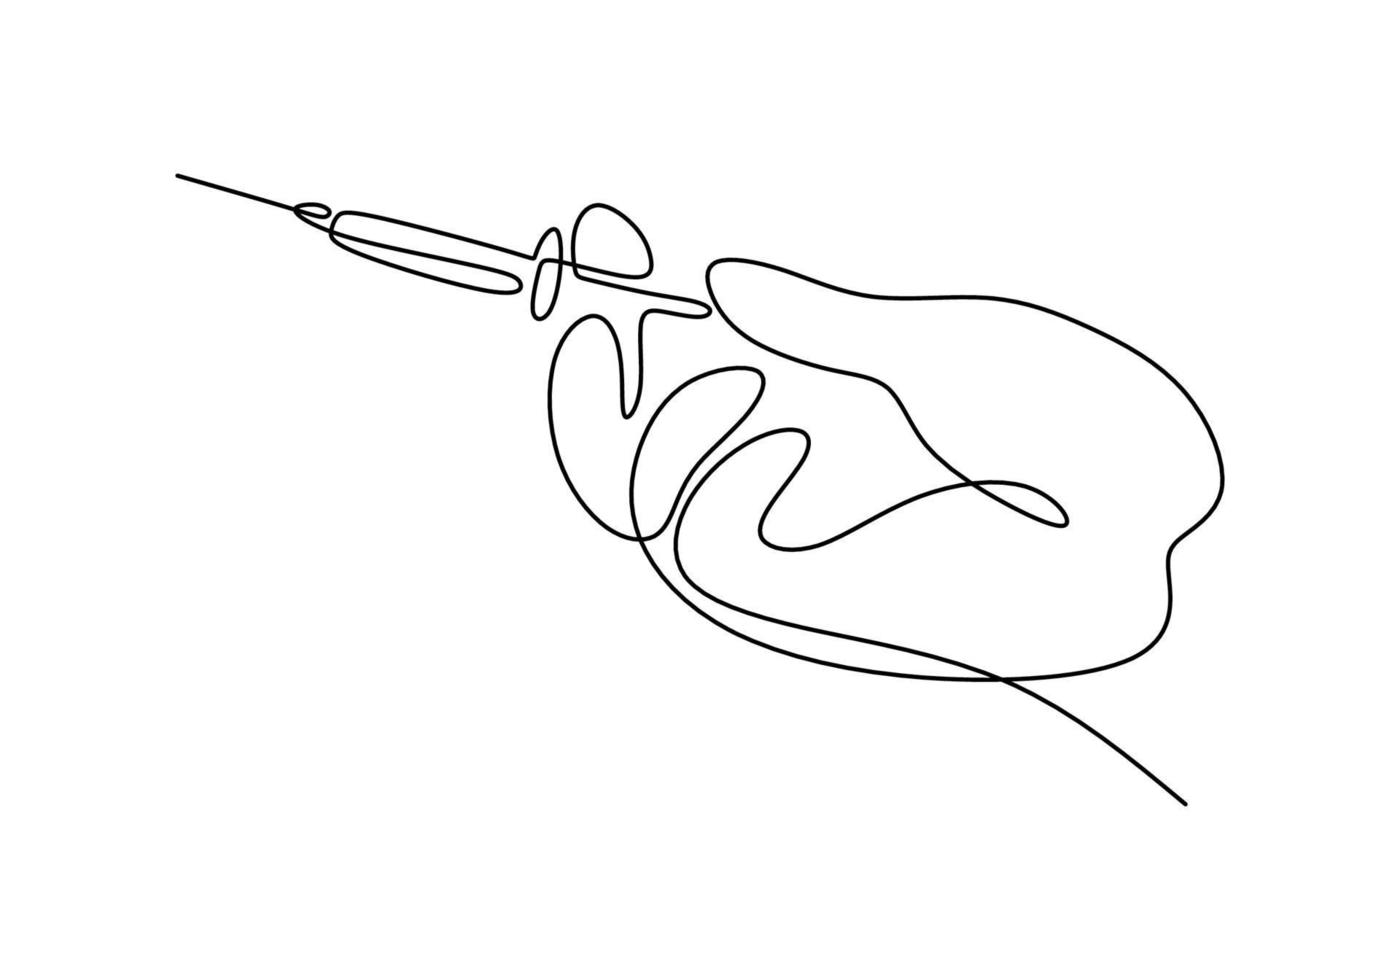 dessin continu d'une ligne d'une main avec injection. illustration de matériel médical ou d & # 39; outils dessinés à la main. une main tenant une aiguille pour le test du vaccin corona isolé sur fond blanc. vecteur